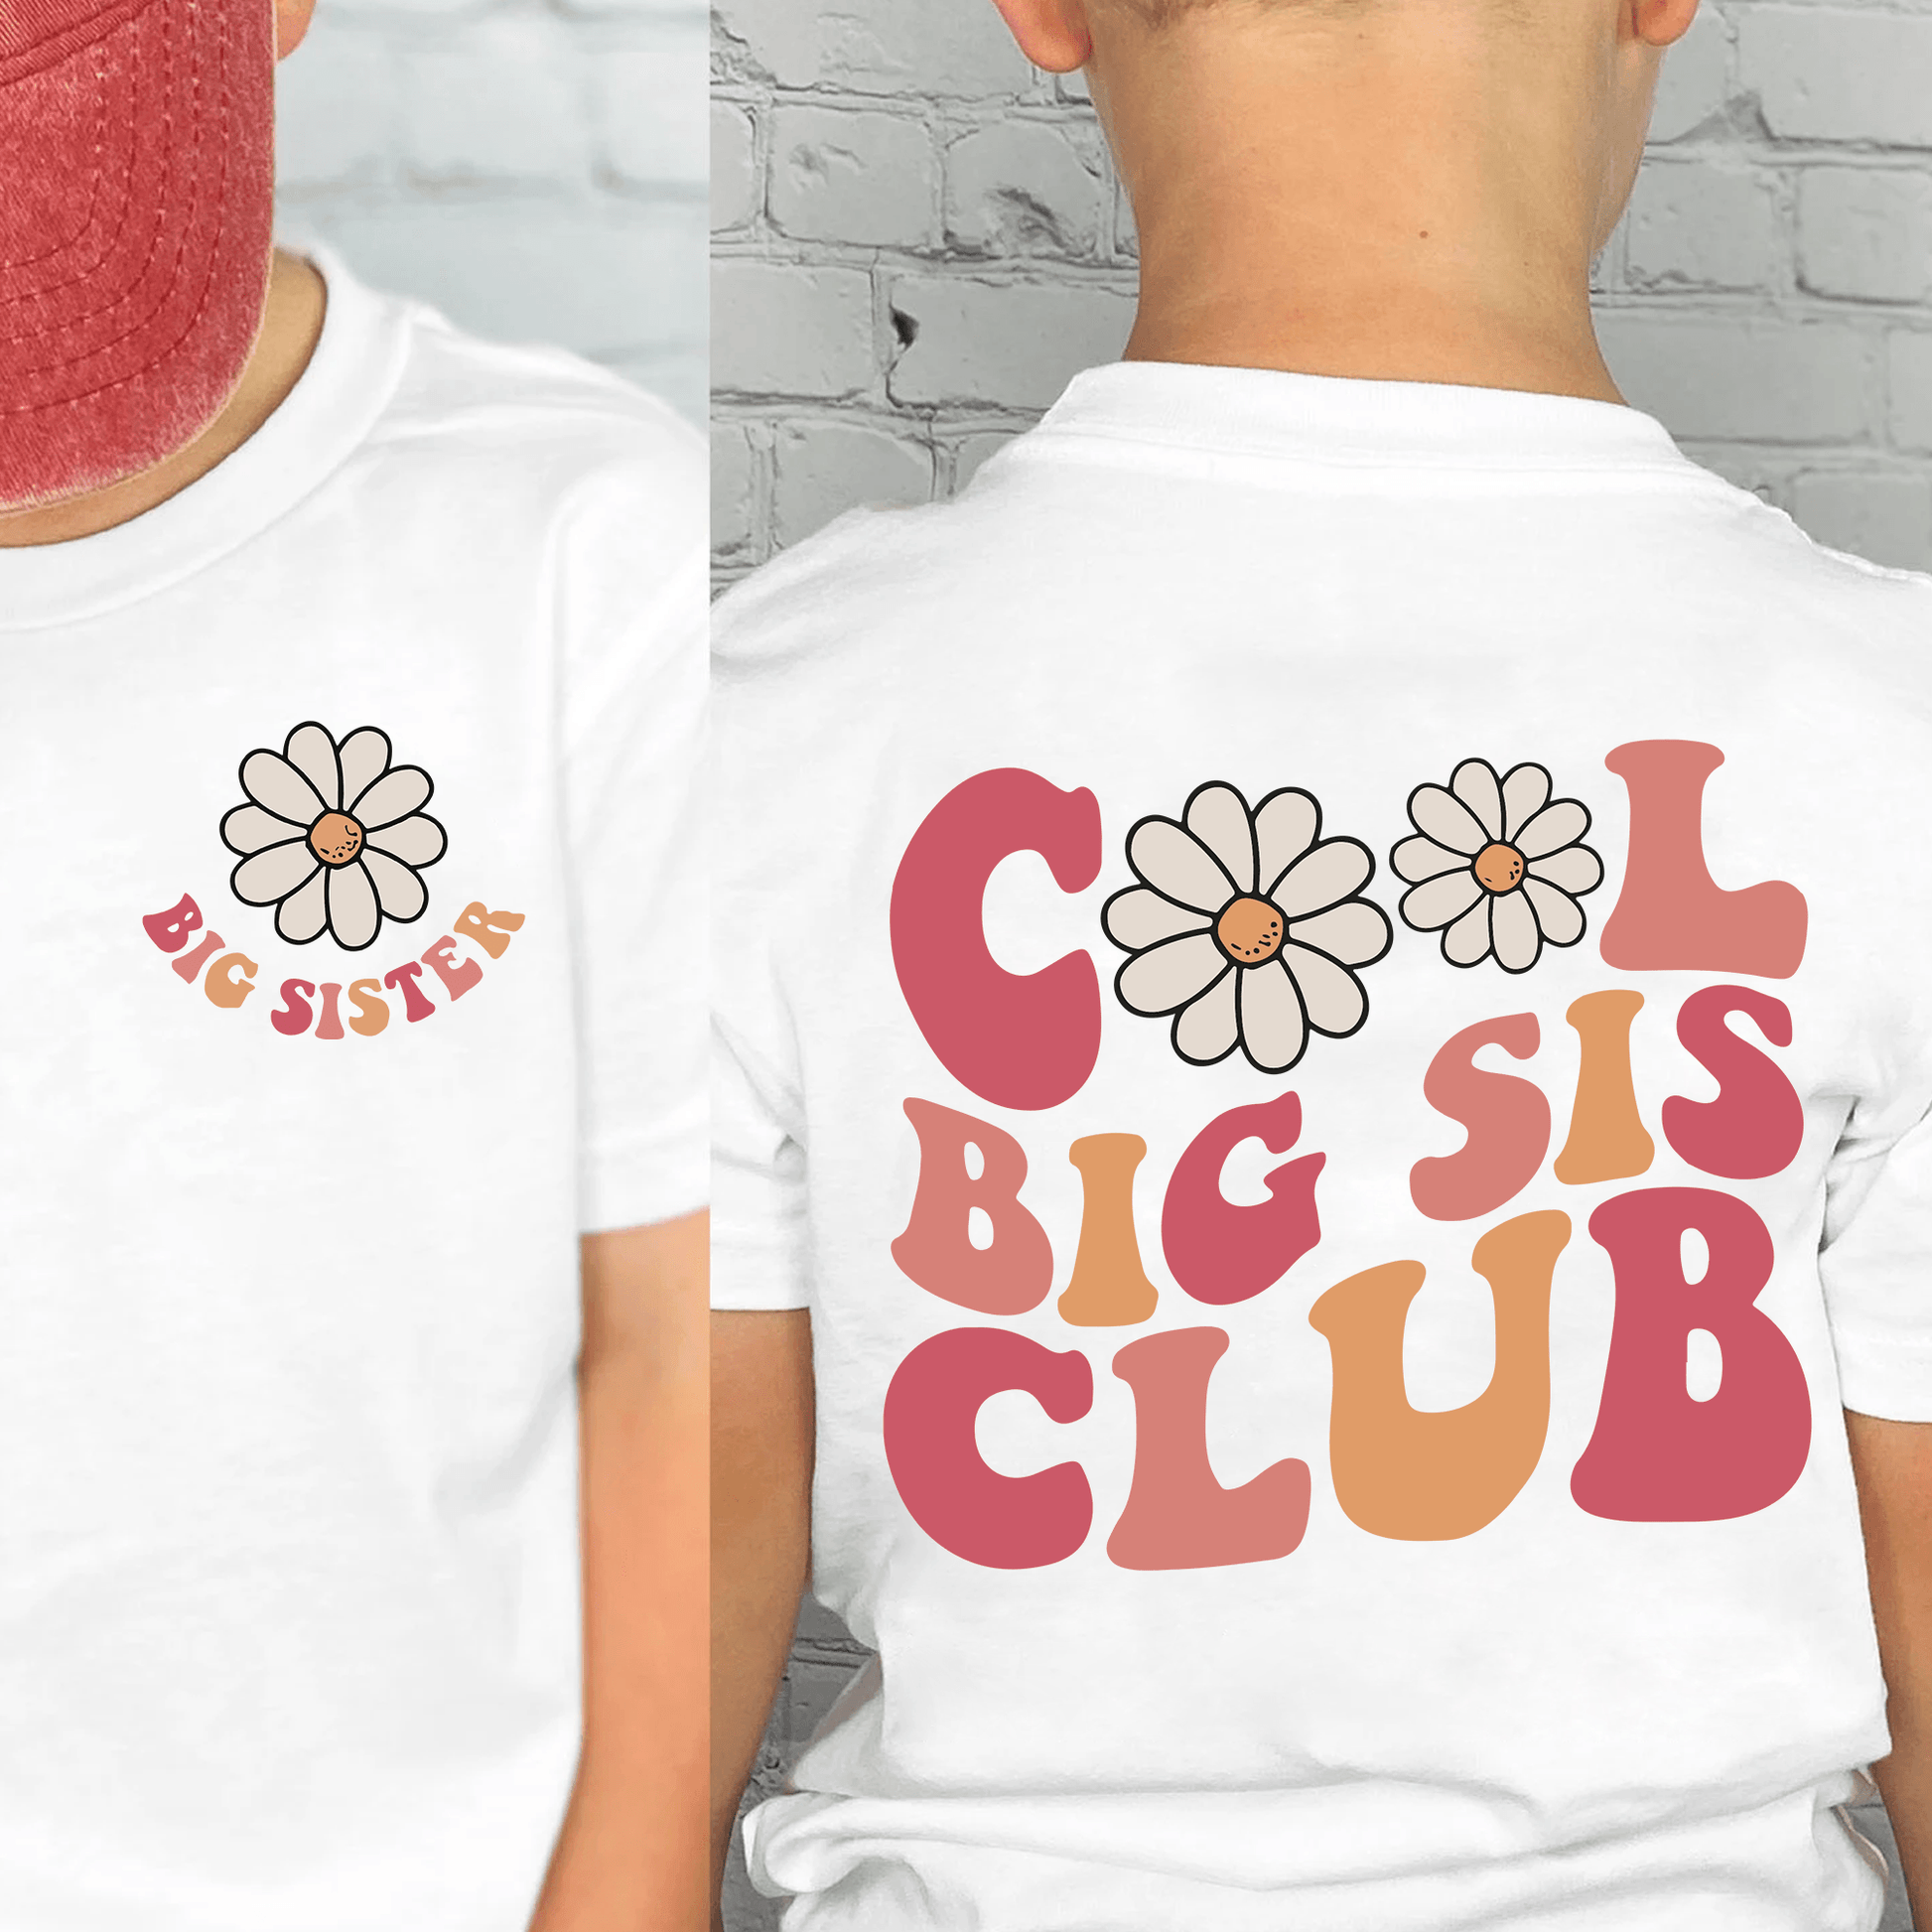 Cool Big Sis Club Shirt - Zum Outfit der größten Schwester befördert - GiftHaus